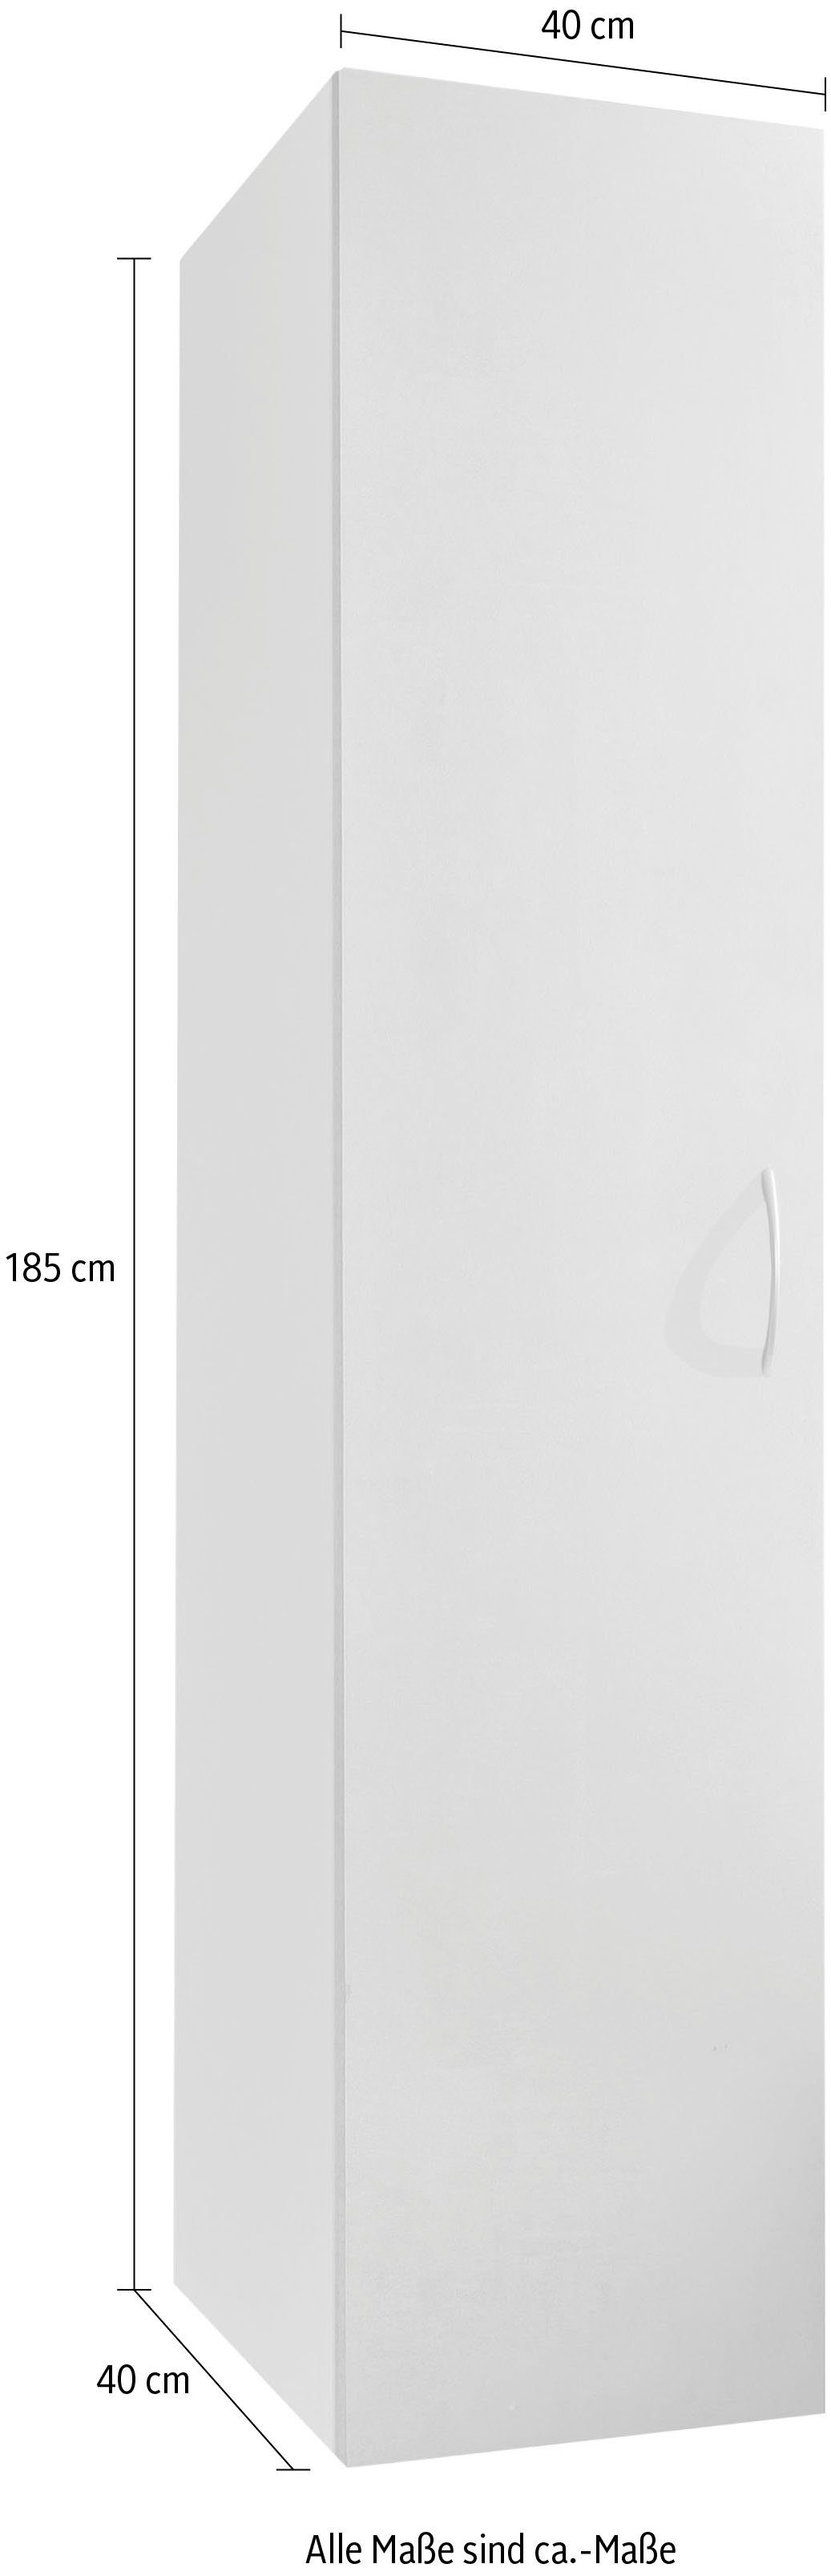 Wimex Beton-Nachbildung Abs. 40 lichtgrau Weiß, Multiraumkonzept Abs. Weiß, lichtgrau Schranksystem cm Beton-Nachbildung Breite |